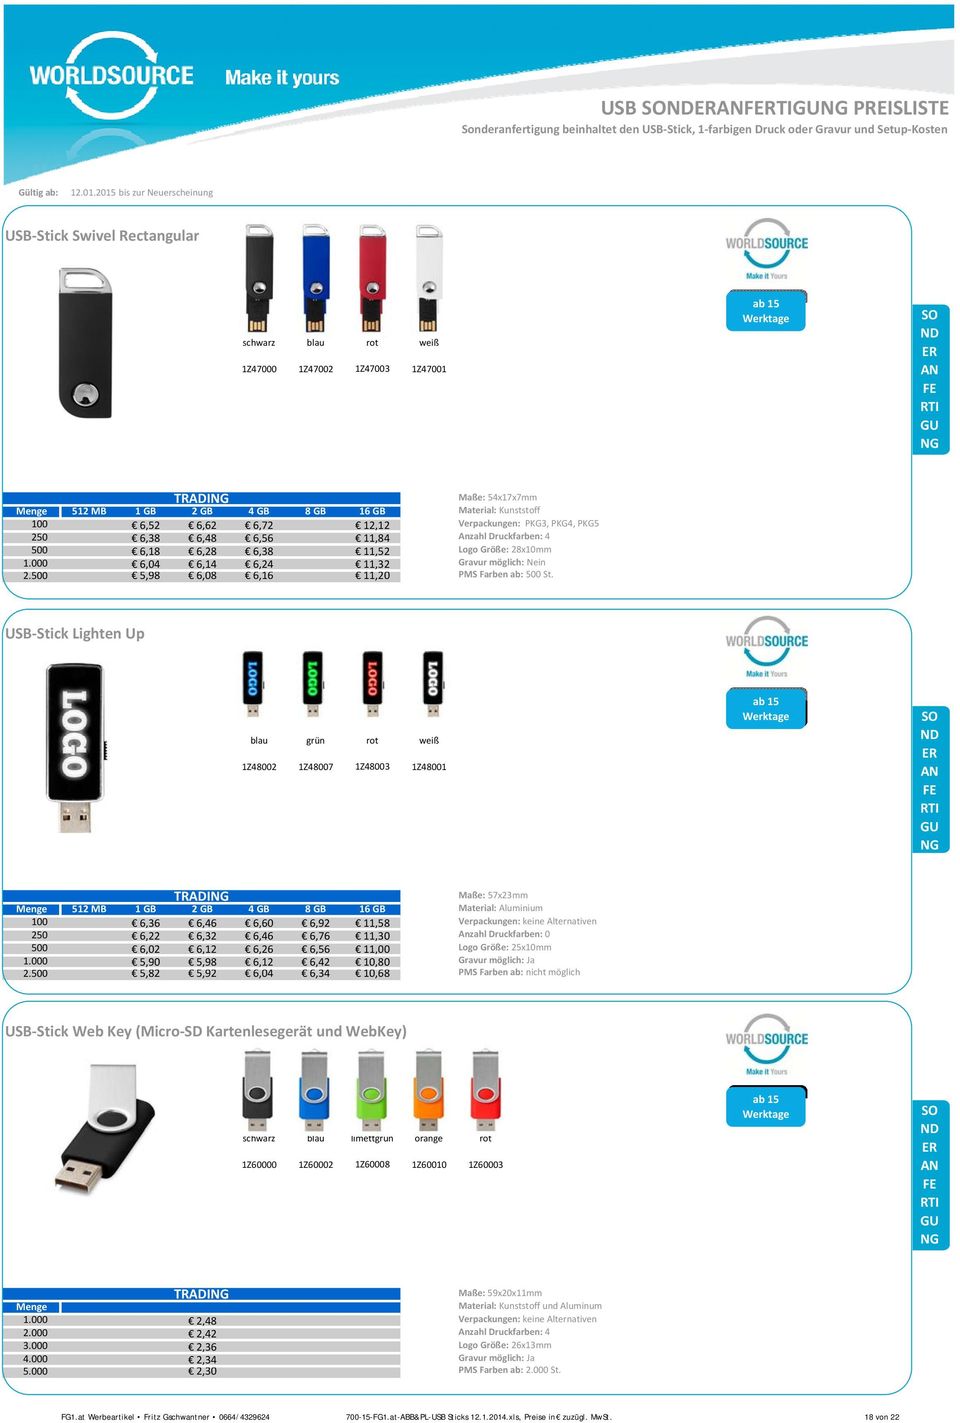 USB-Stick Lighten Up blau grün rot weiß 1Z48002 1Z48007 1Z48003 1Z48001 ab 10 15 TRADI Maße: 57x23mm Menge 512 MB 1 GB 2 GB 4 GB 8 GB 16 GB Material: Aluminium 100 6,36 6,46 6,60 6,92 11,58